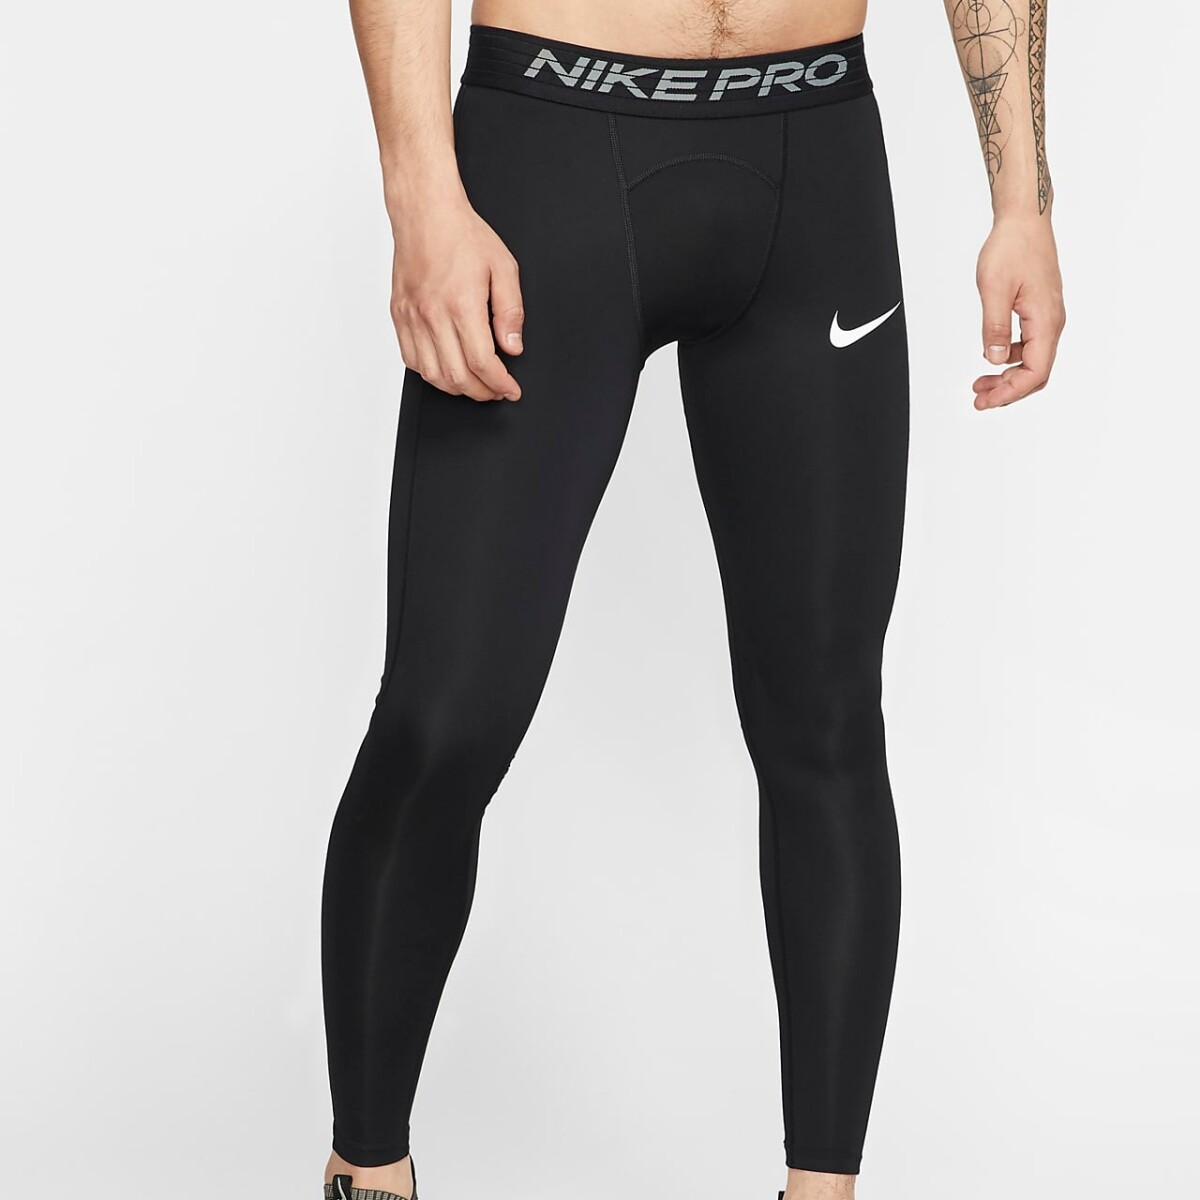 Calza Nike Training Hombre Tght Black/(White) - S/C 